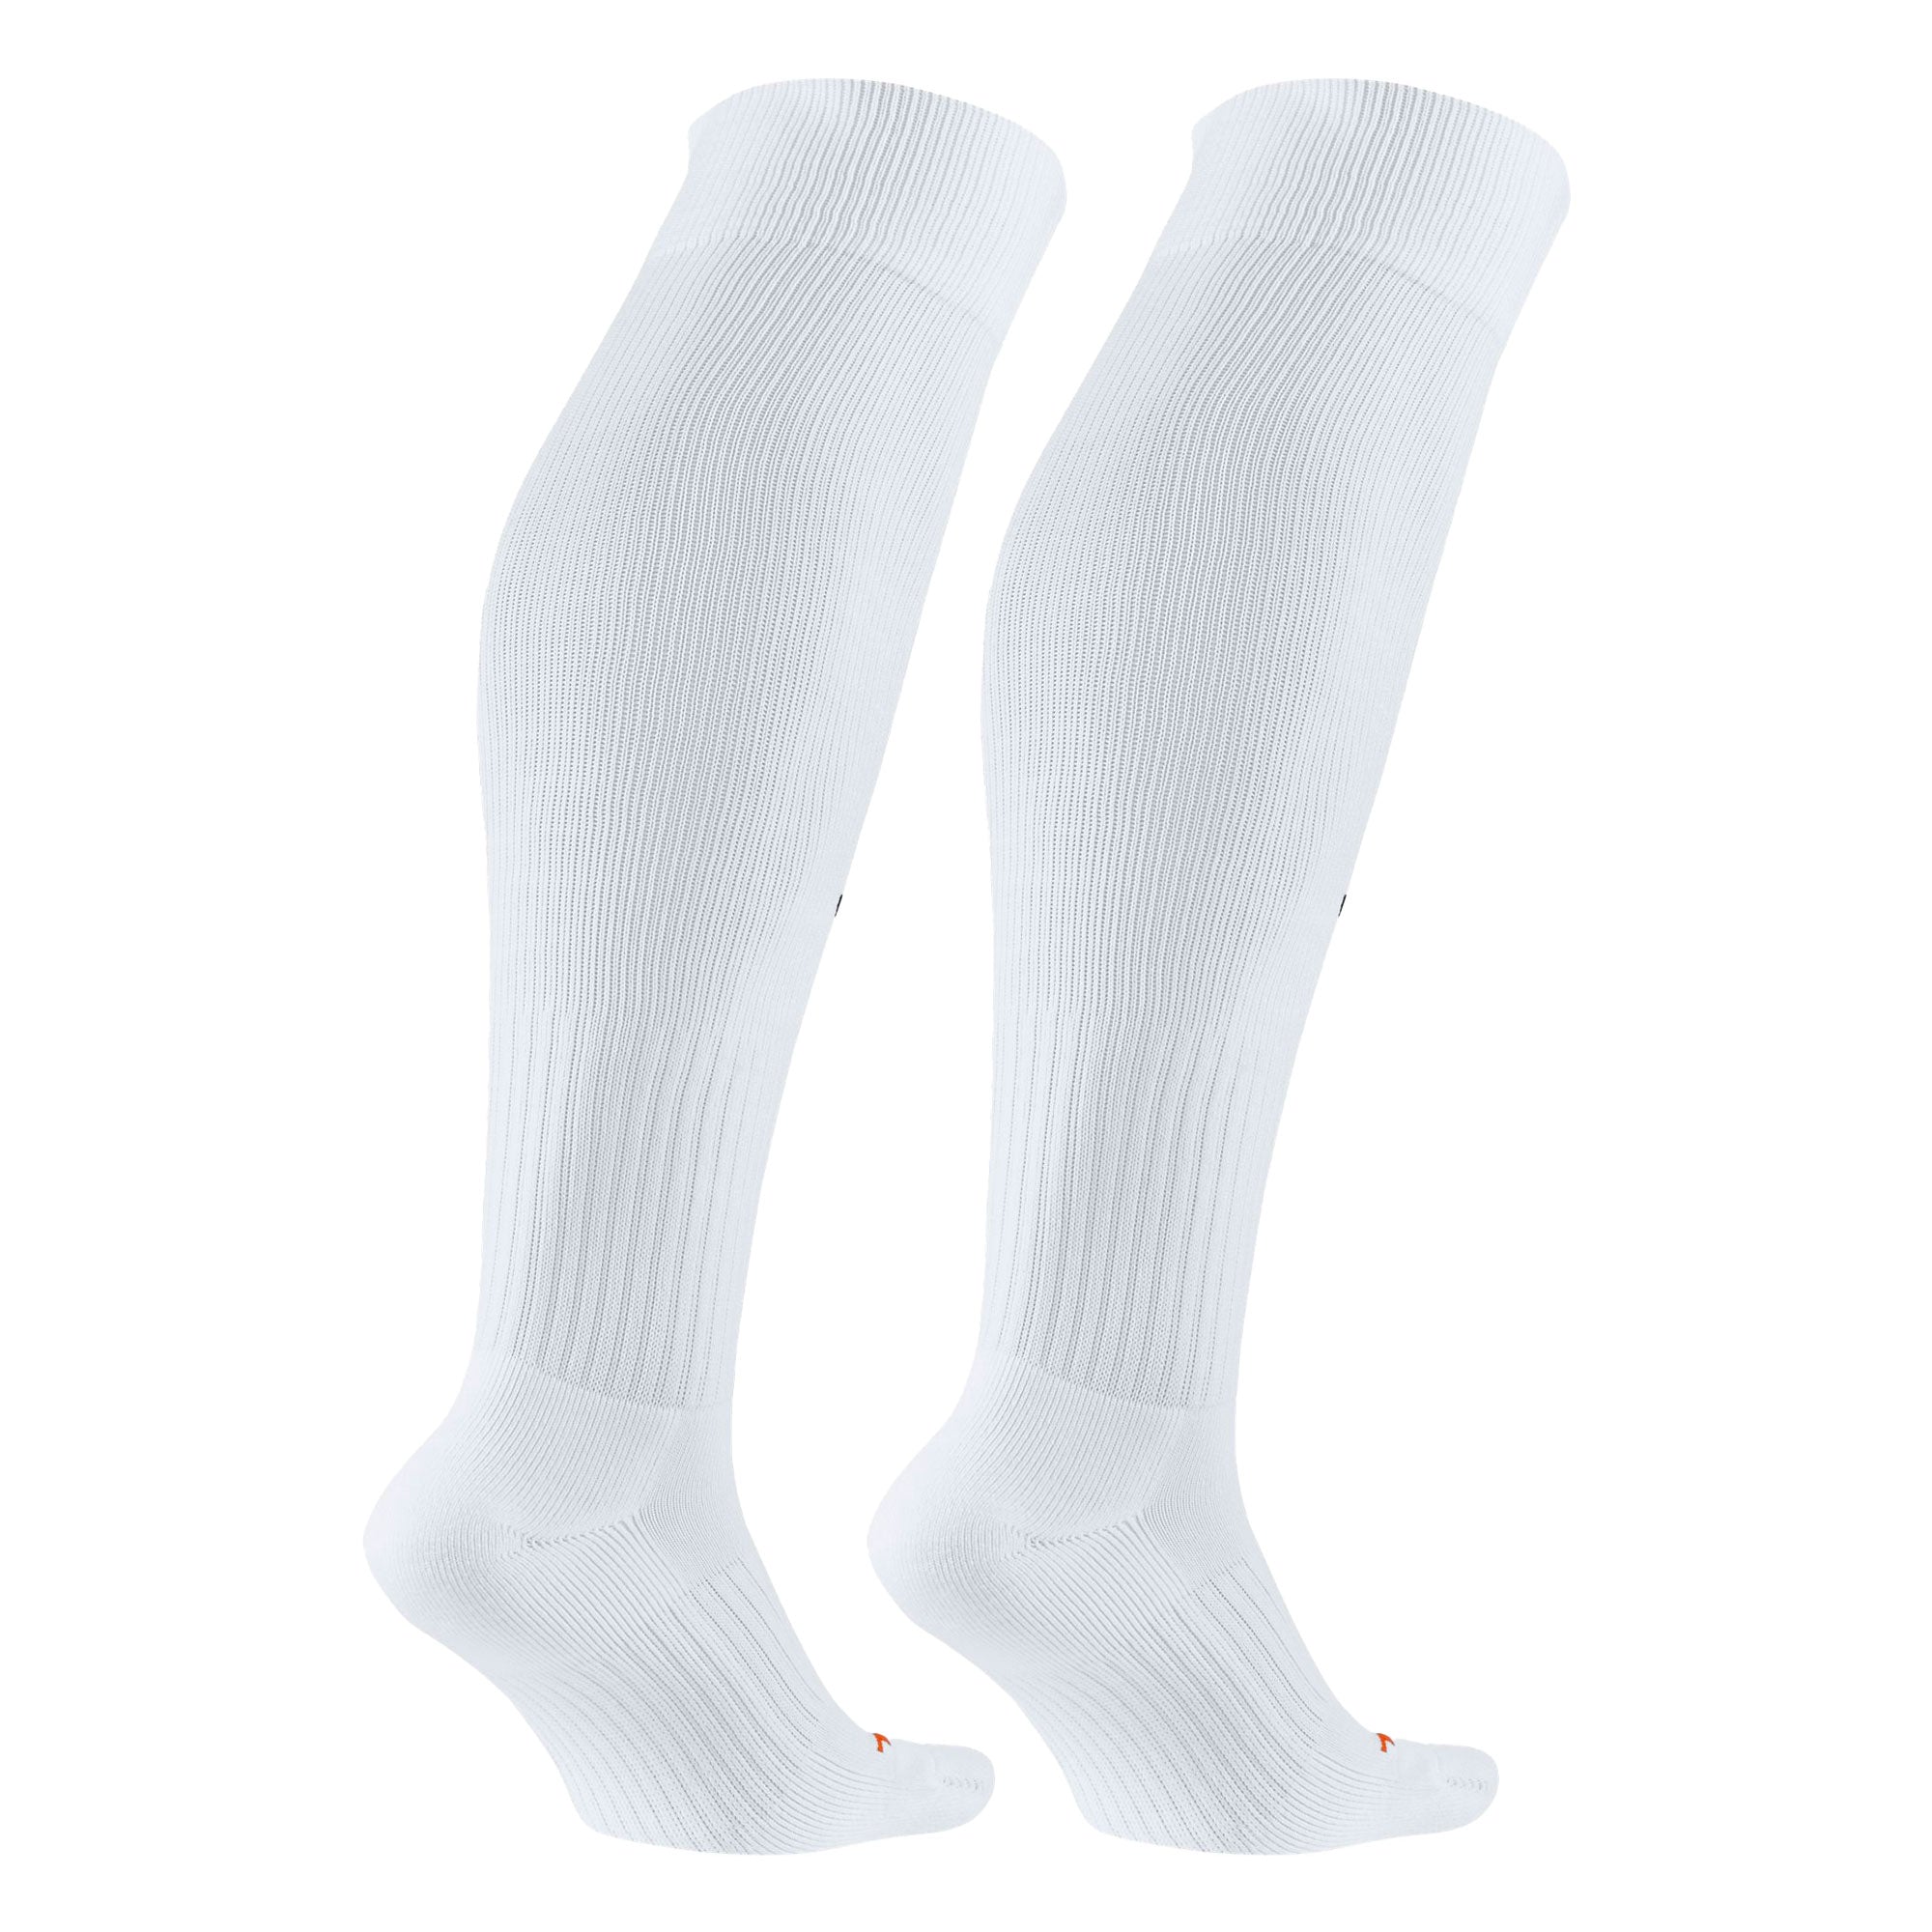 Nike Men's Vapor Knee High Socks - White/Black – Azteca Soccer